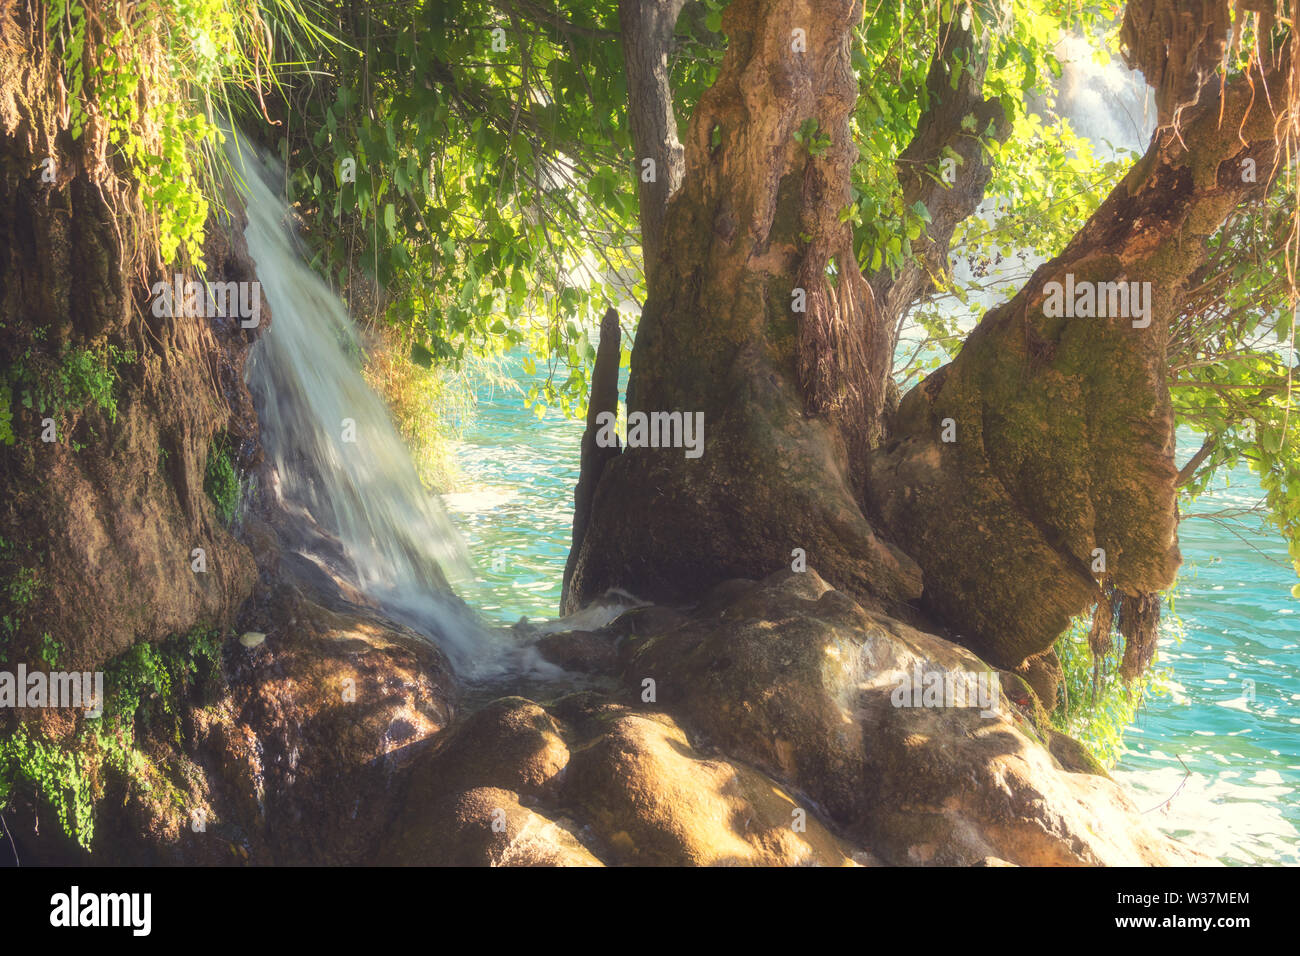 Wonders of nature - bizarre tree, stone and waterfall Stock Photo